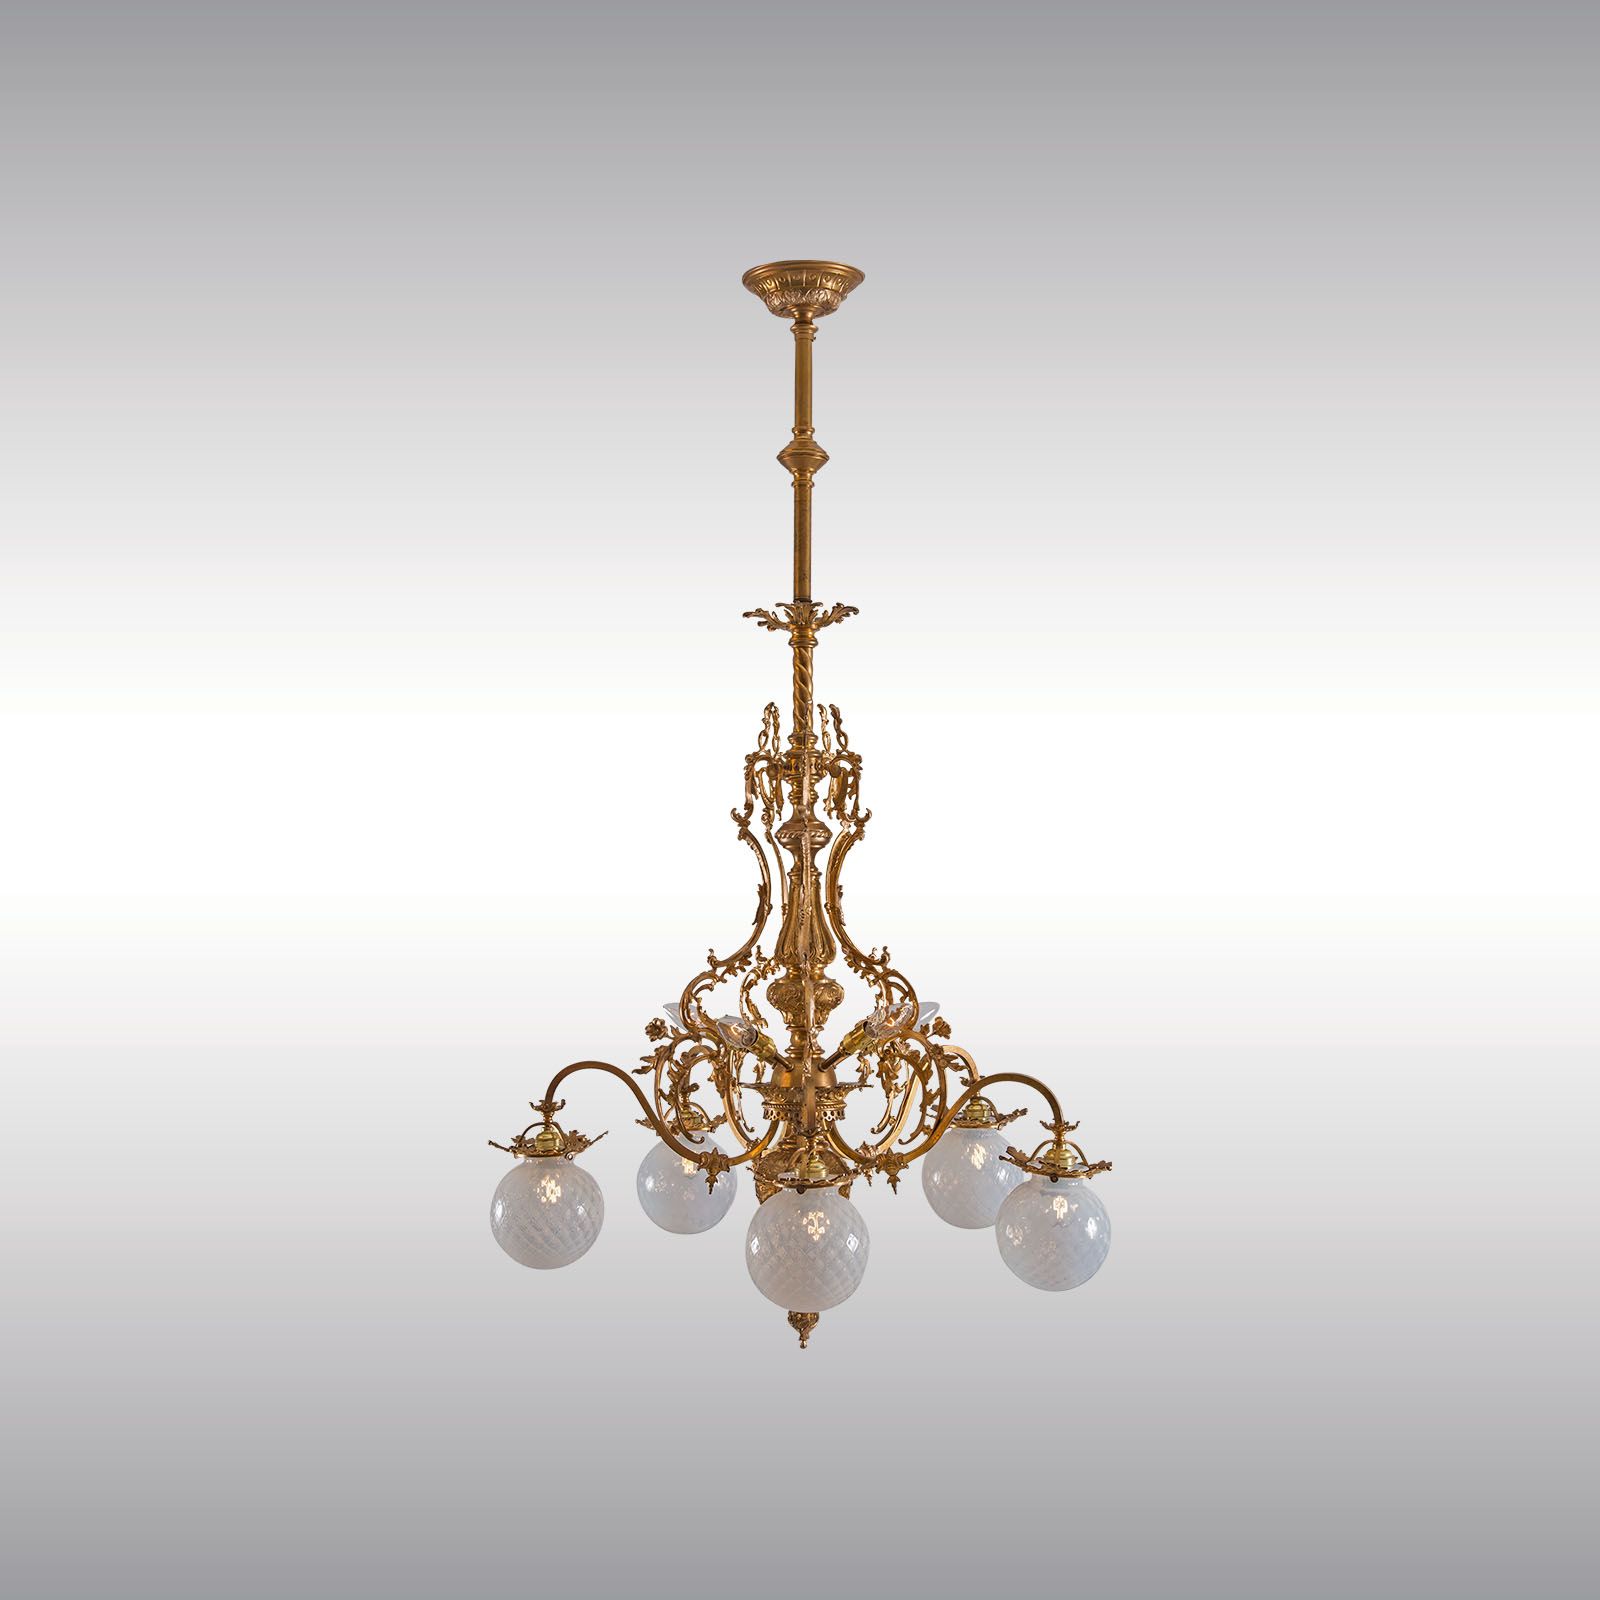 WOKA LAMPS VIENNA - OrderNr.:  60052|Jugendstil - Historistic chandelier